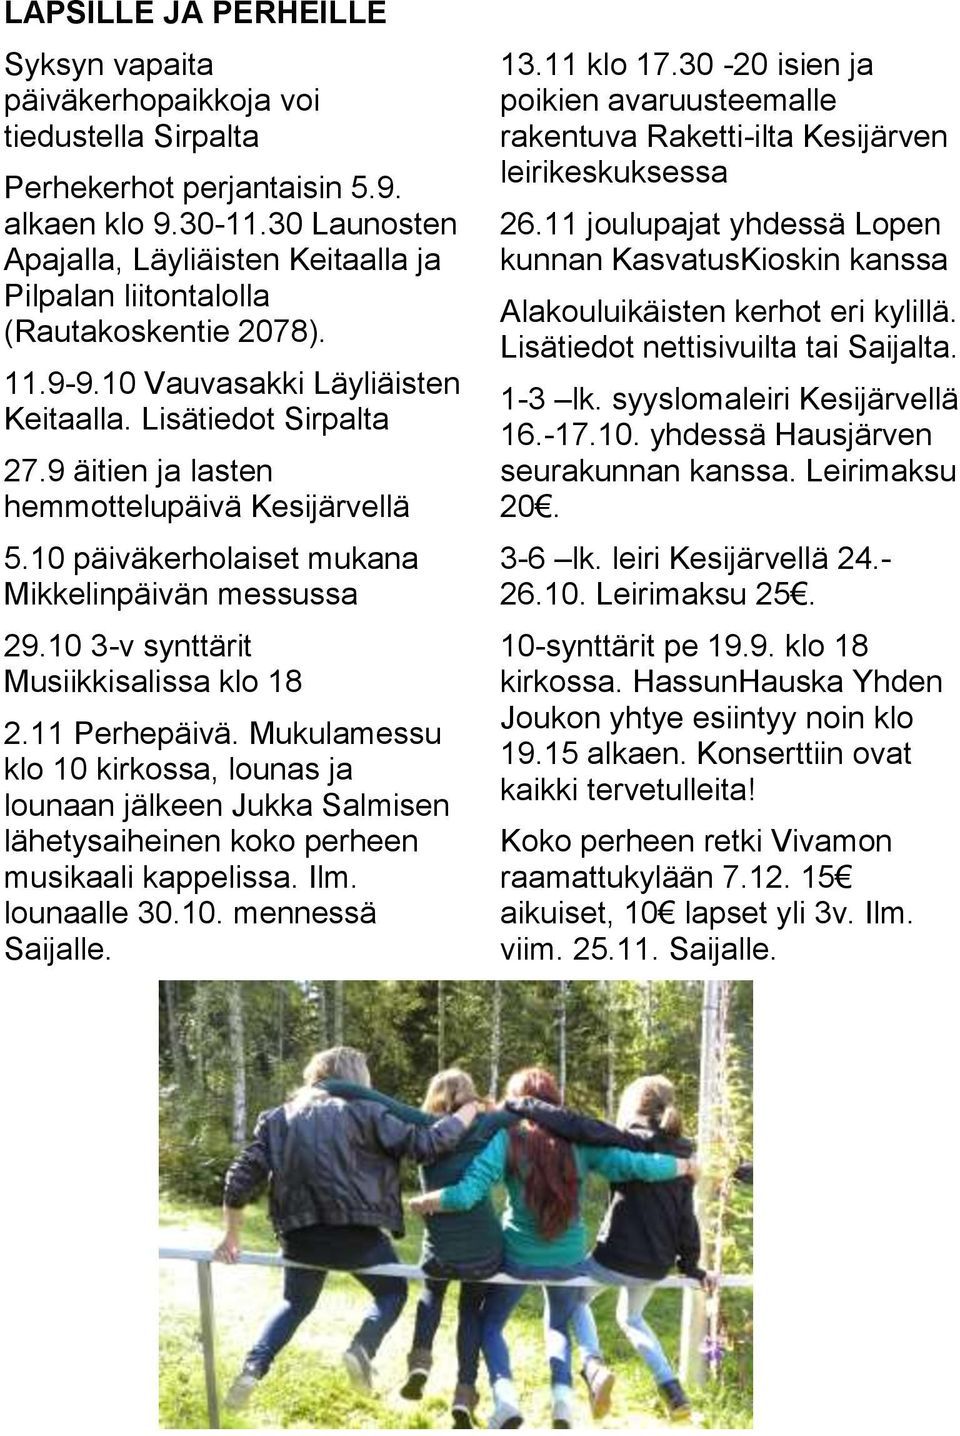 9 äitien ja lasten hemmottelupäivä Kesijärvellä 5.10 päiväkerholaiset mukana Mikkelinpäivän messussa 29.10 3-v synttärit Musiikkisalissa klo 18 2.11 Perhepäivä.